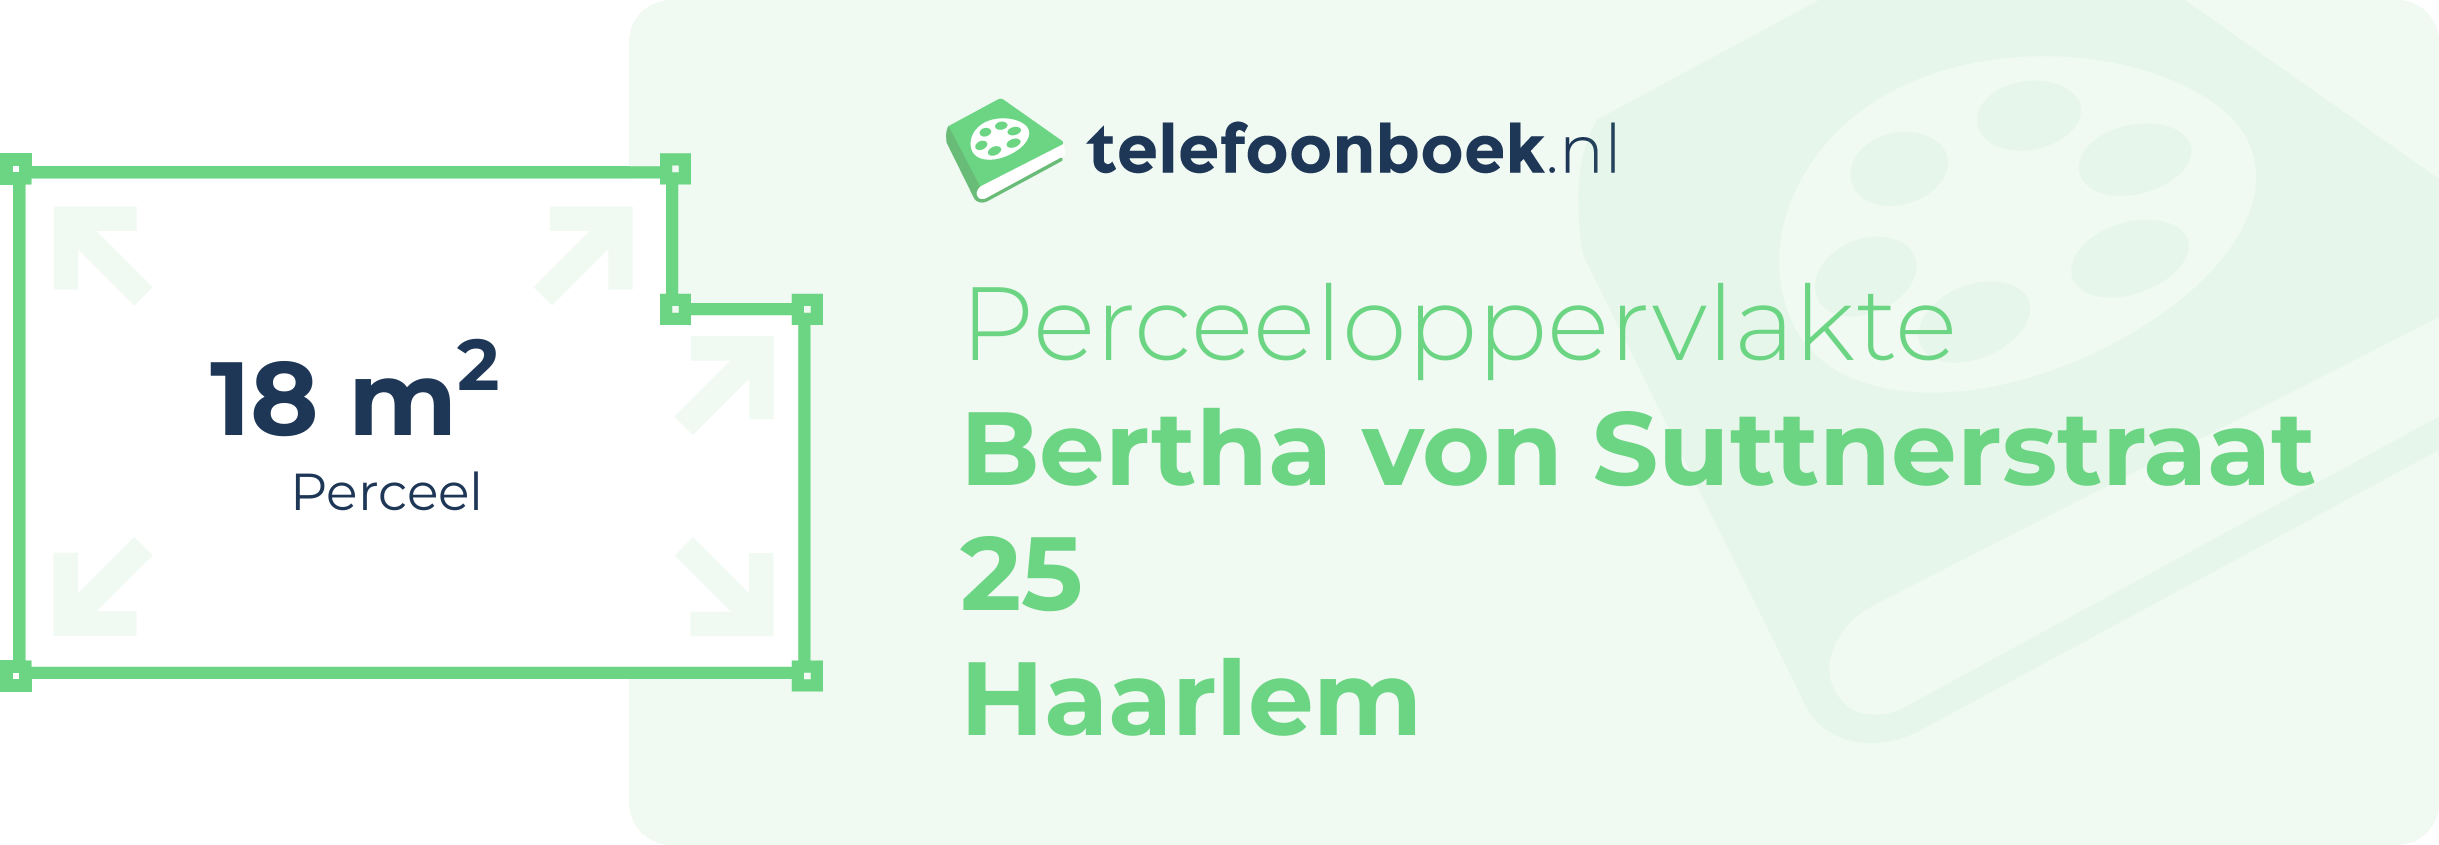 Perceeloppervlakte Bertha Von Suttnerstraat 25 Haarlem